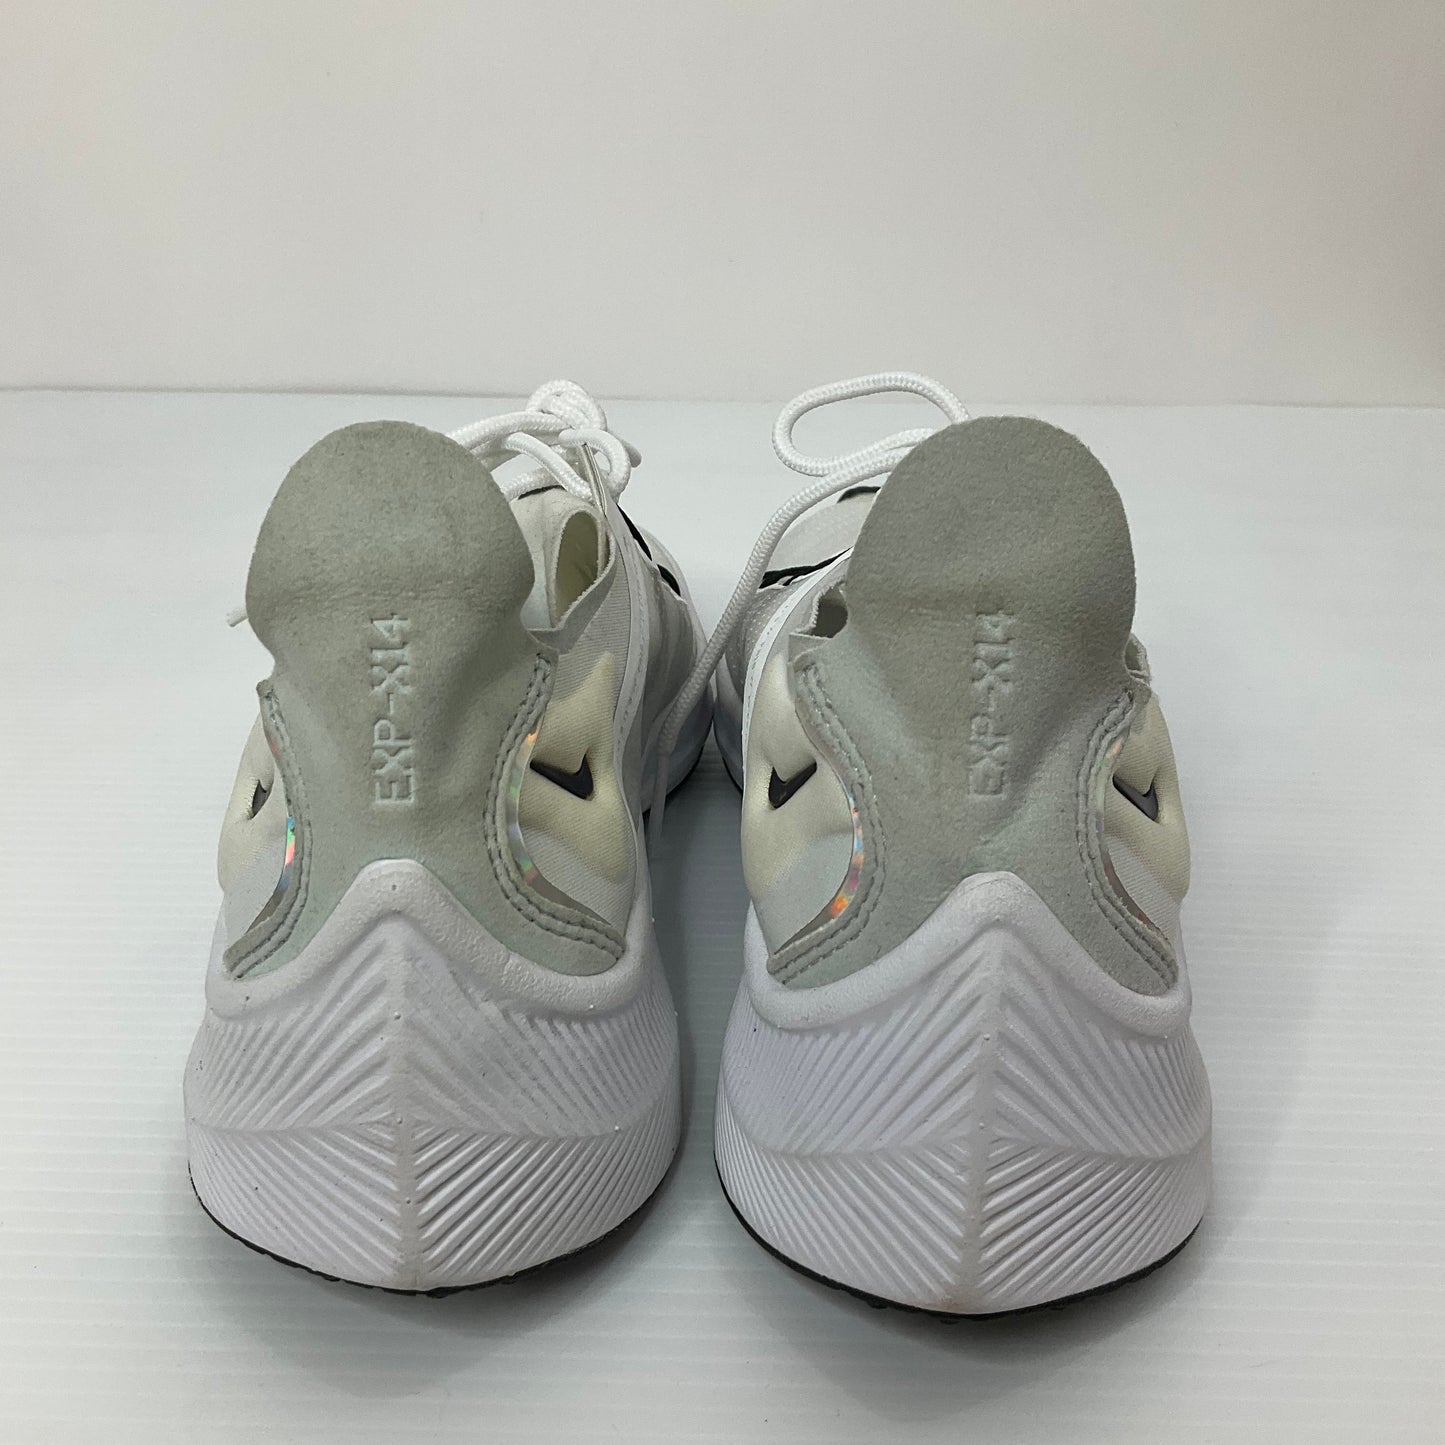 Cream Shoes Athletic Nike, Size 7.5